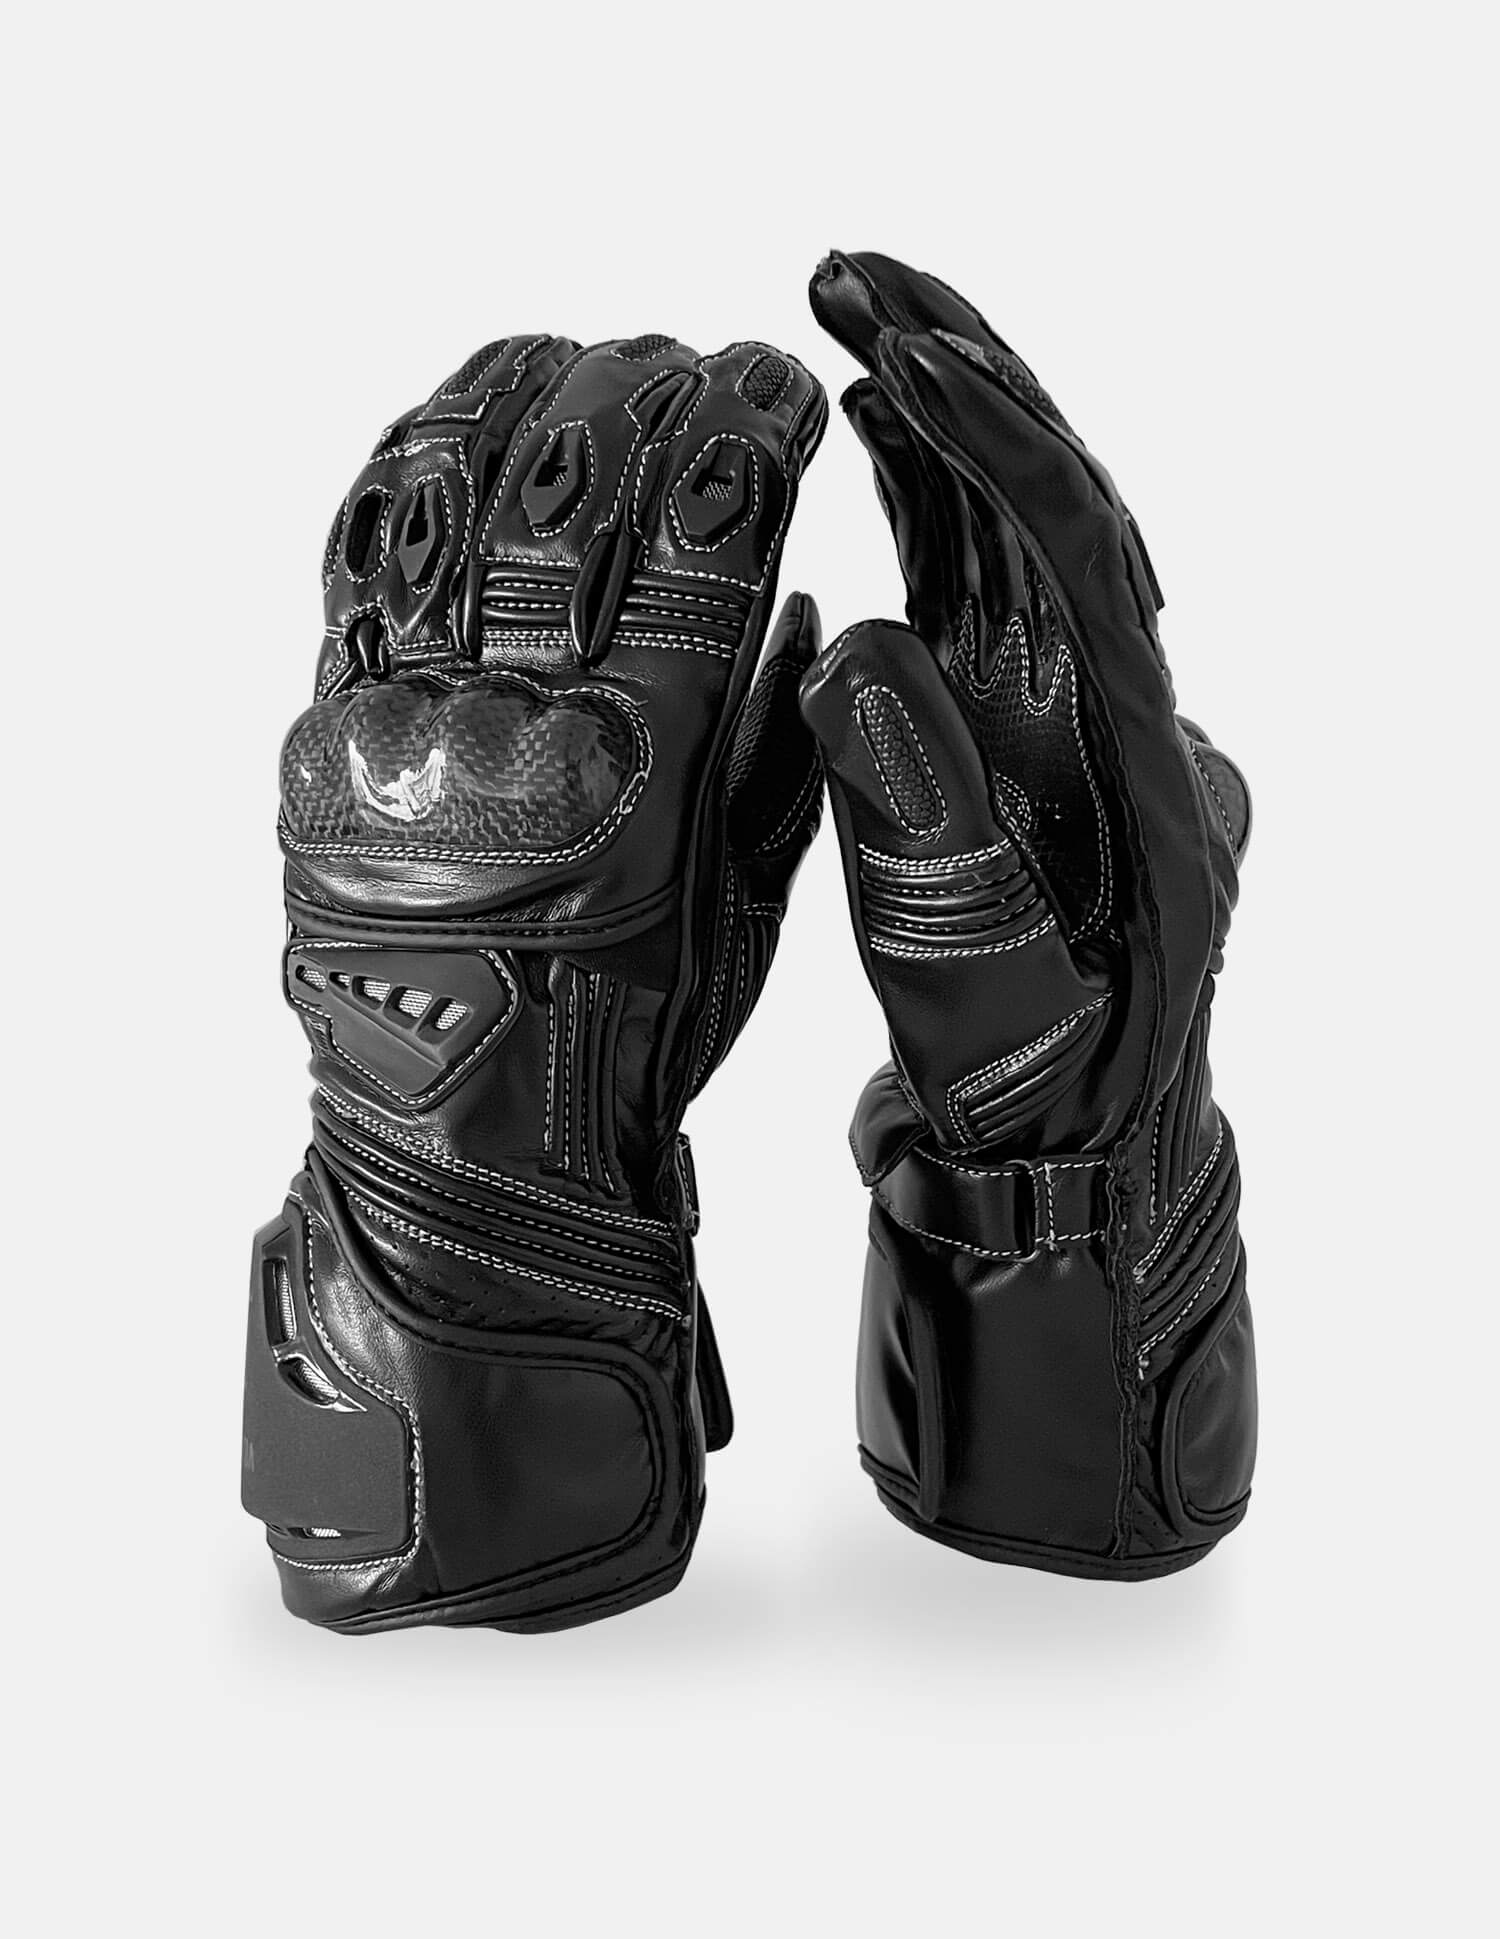 Meteor + Meteor Winter gloves pack